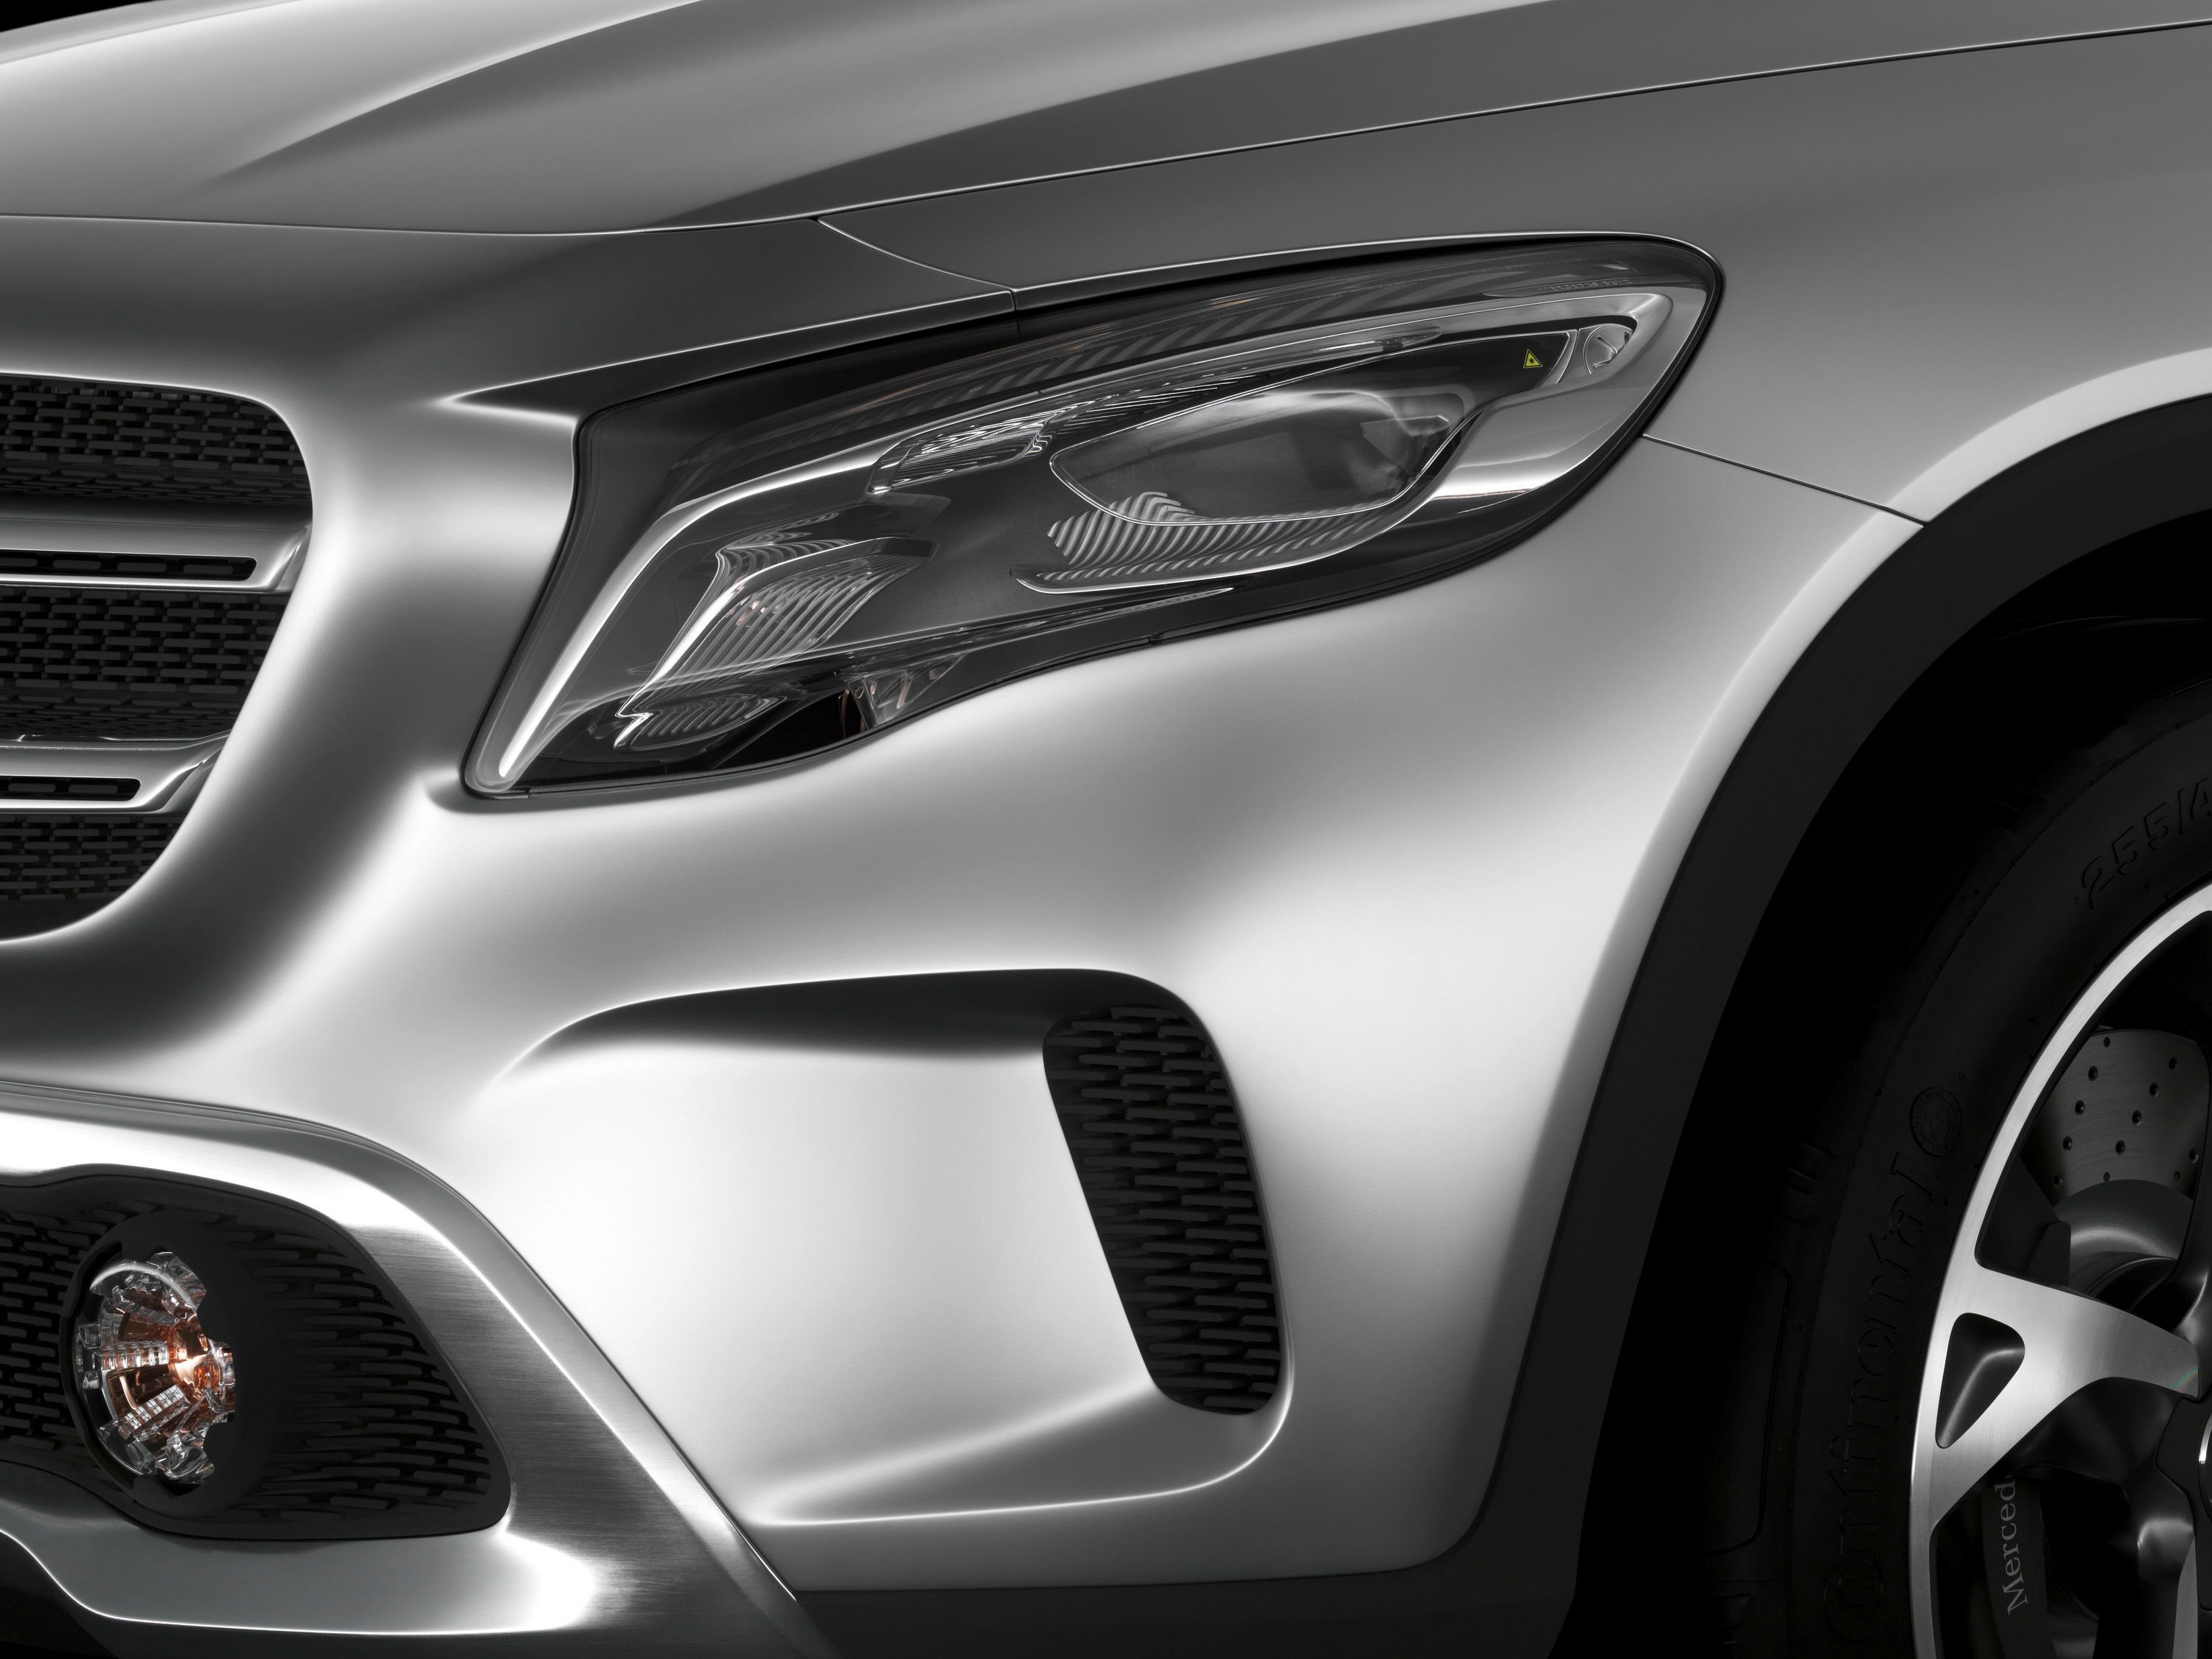 2015 Mercedes-Benz Concept GLA